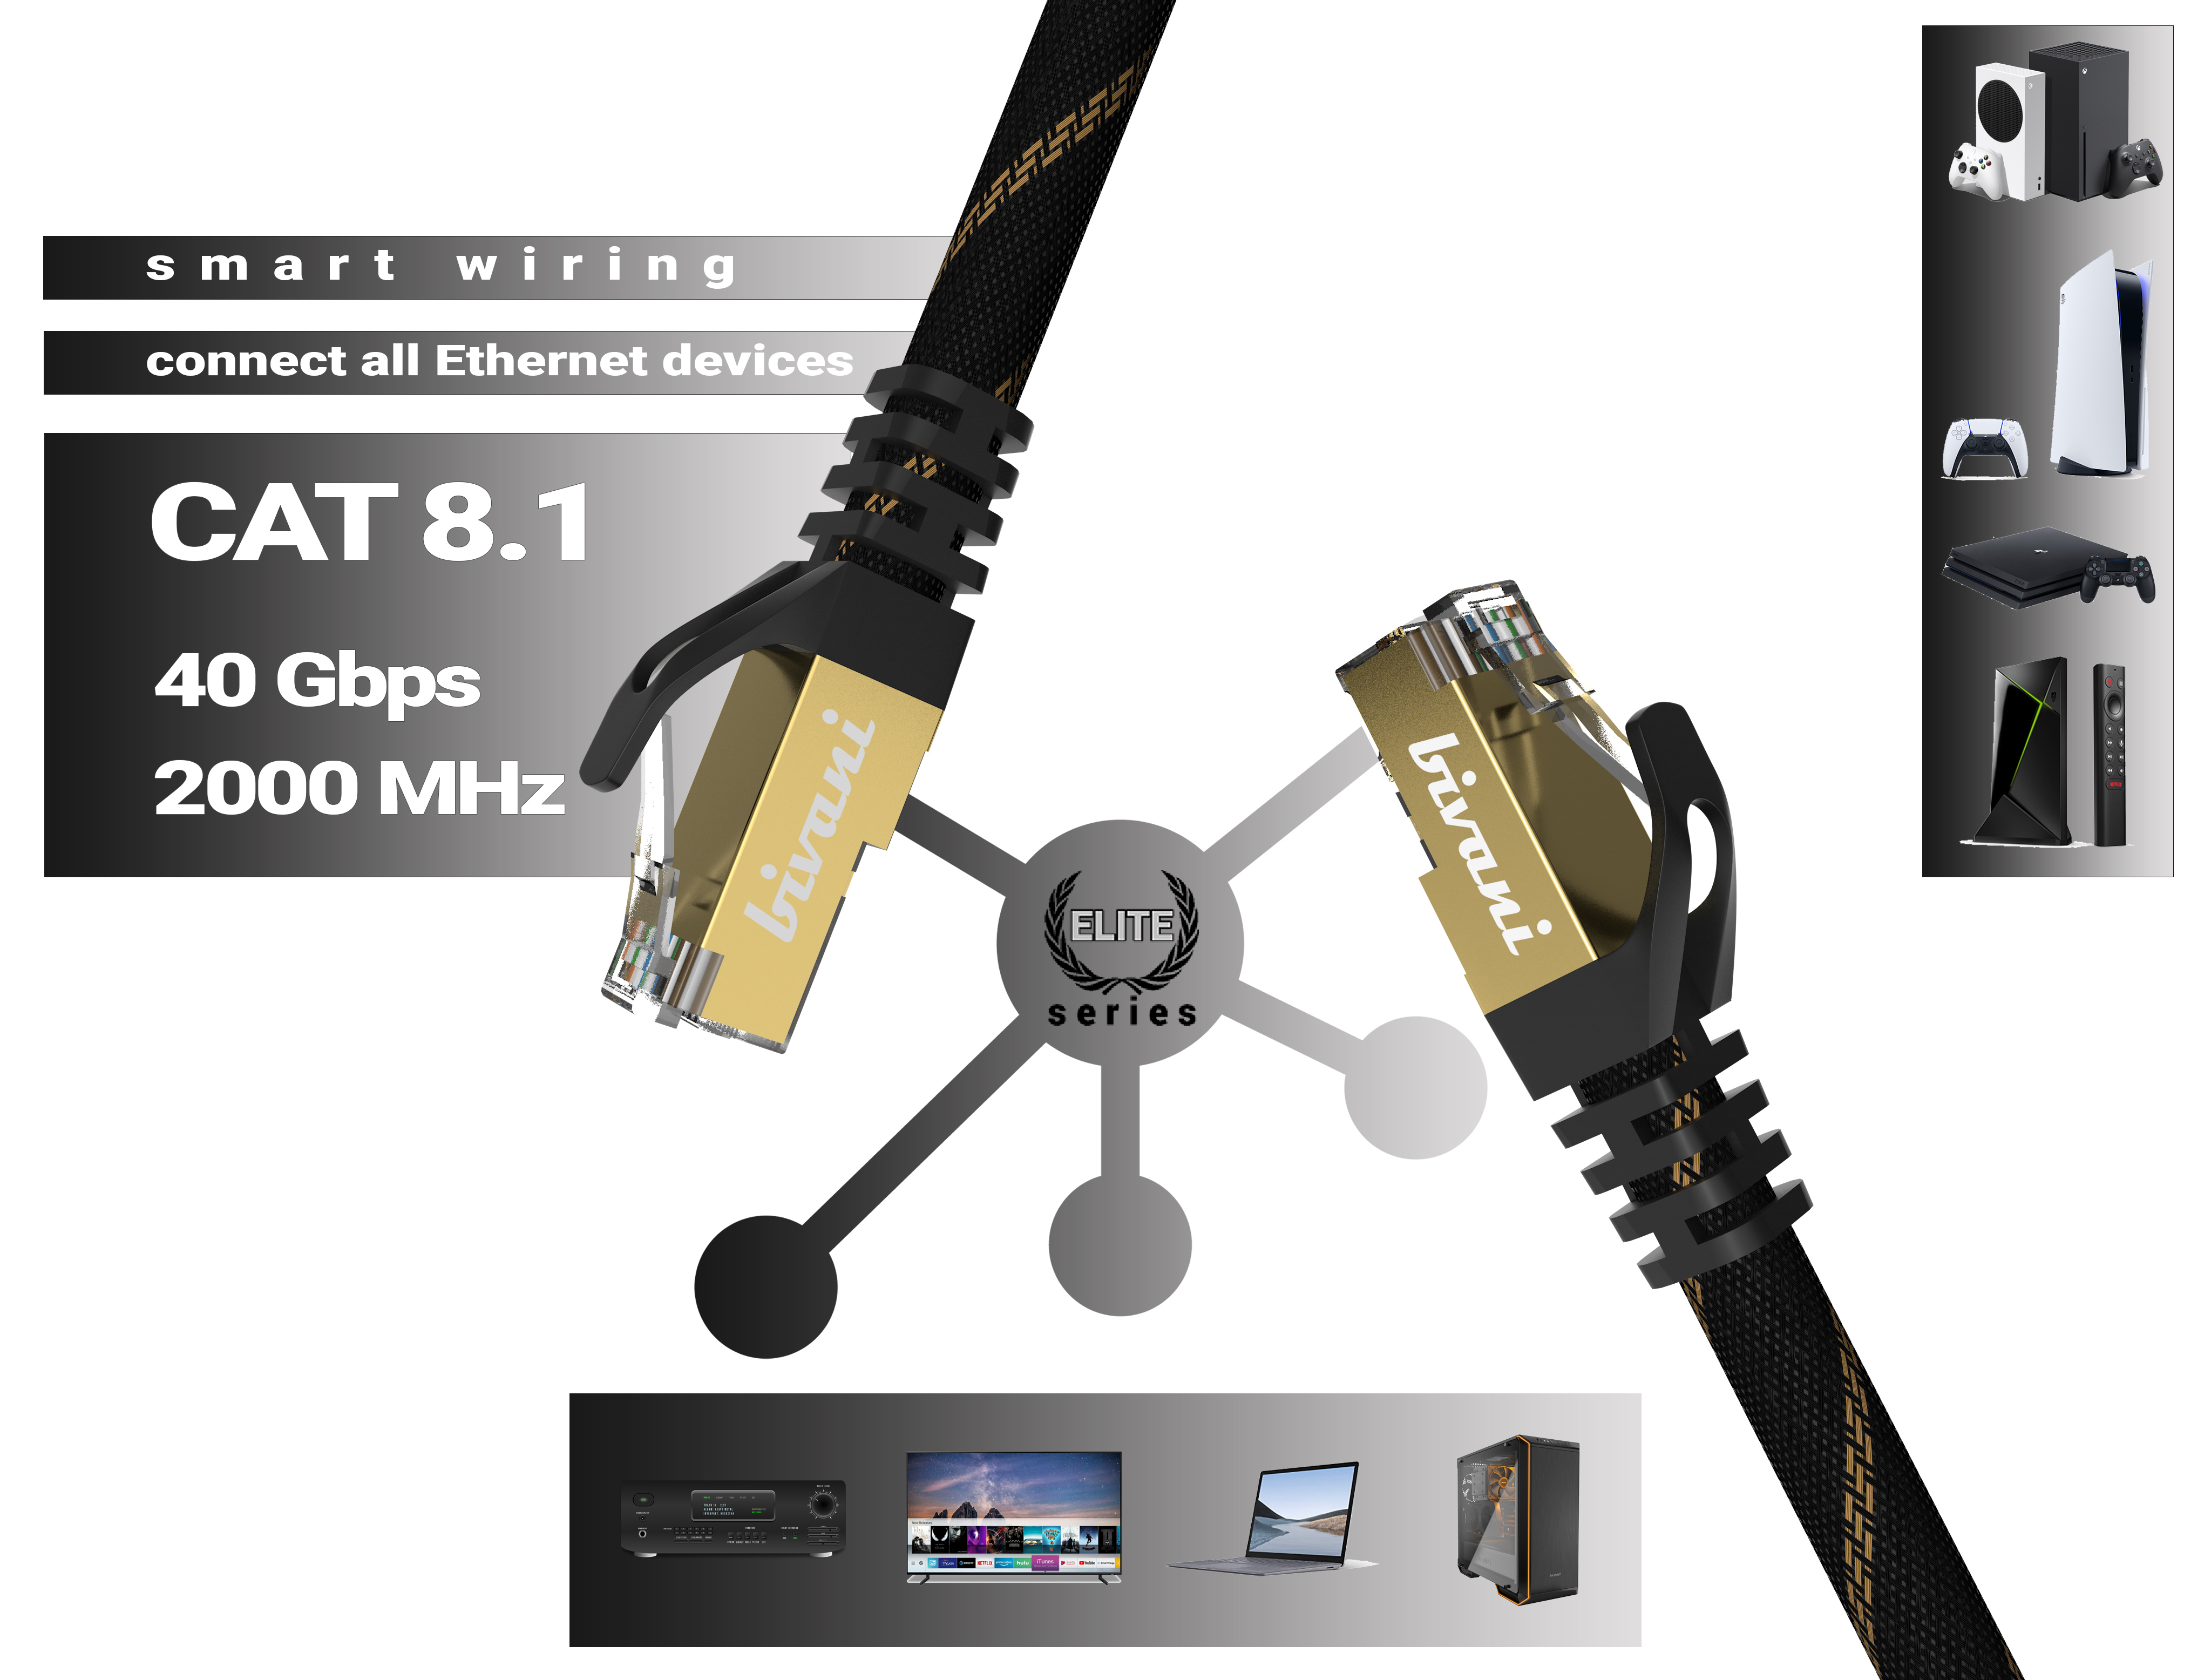 Premium Netzwerkkabel, CAT BIVANI LAN 5 Gbps Elite-Series, Kabel - 8.1 40 m